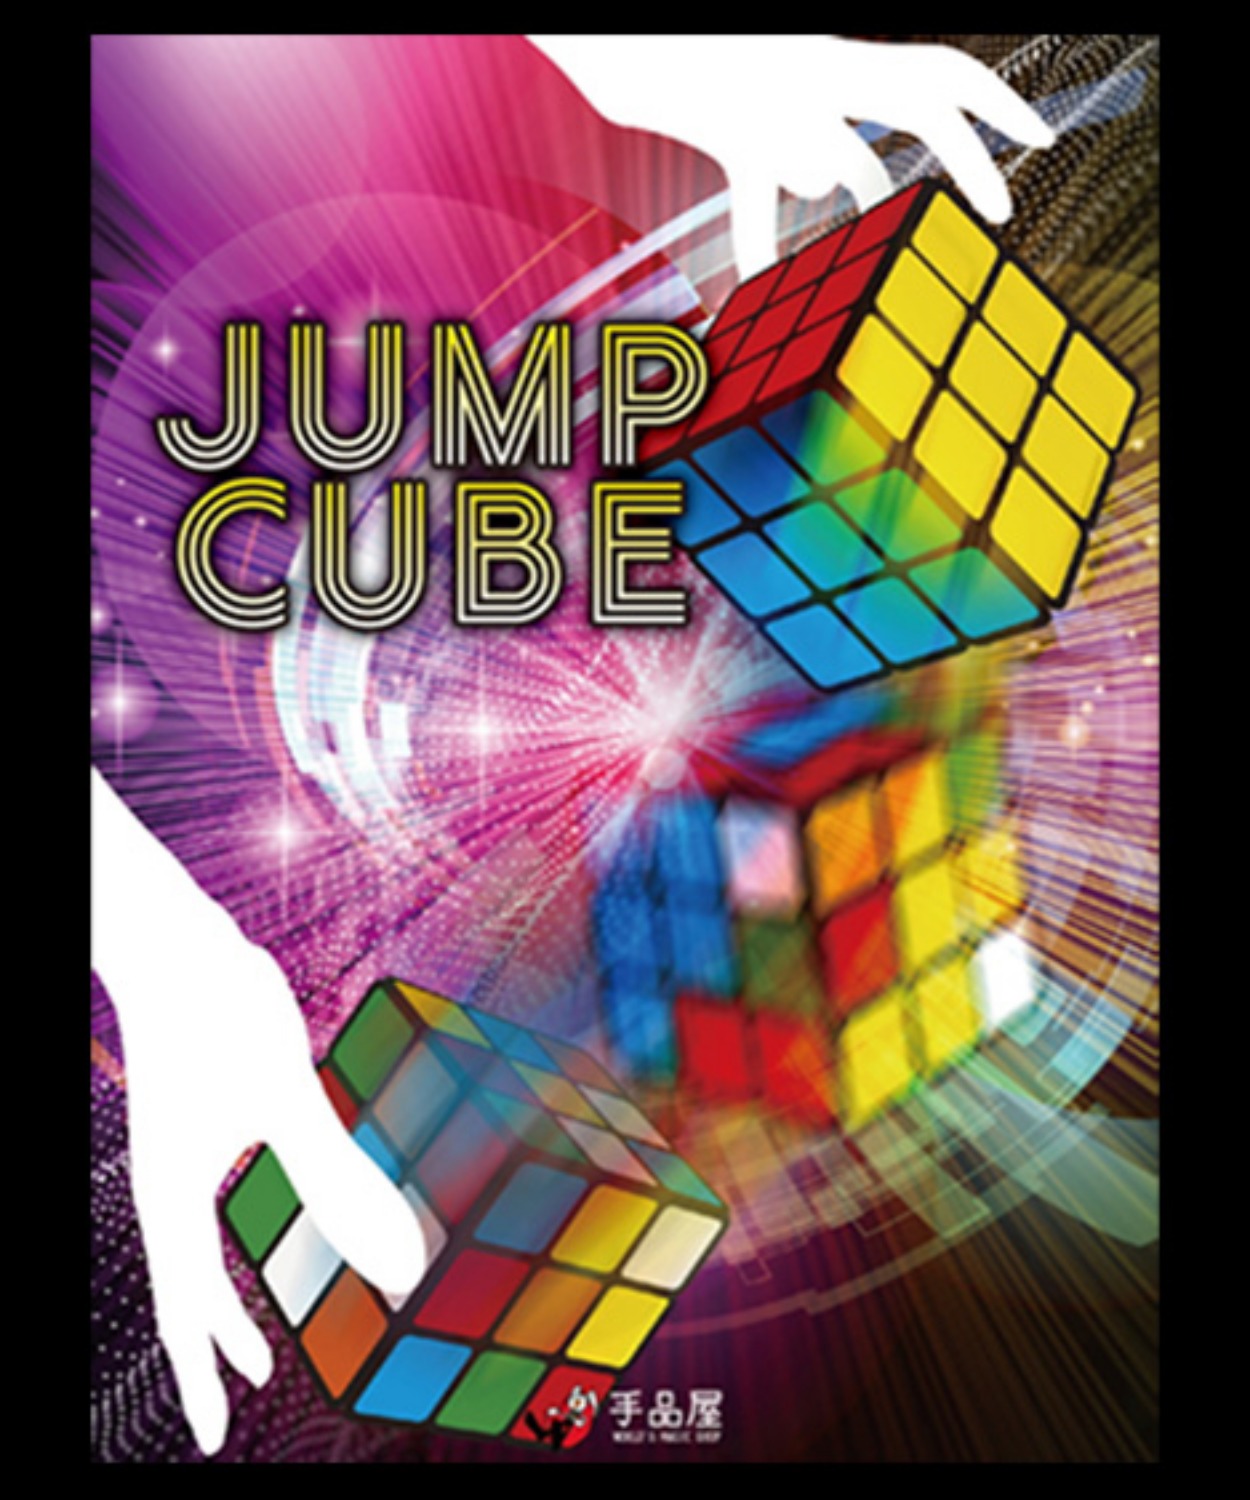 [점프큐브] JUMP CUBE by SYOUMA - 관객의 눈앞에서 큐브가 서서히 (저절로)맞춰지는 아주 비쥬얼한 마술입니다. (partyn)